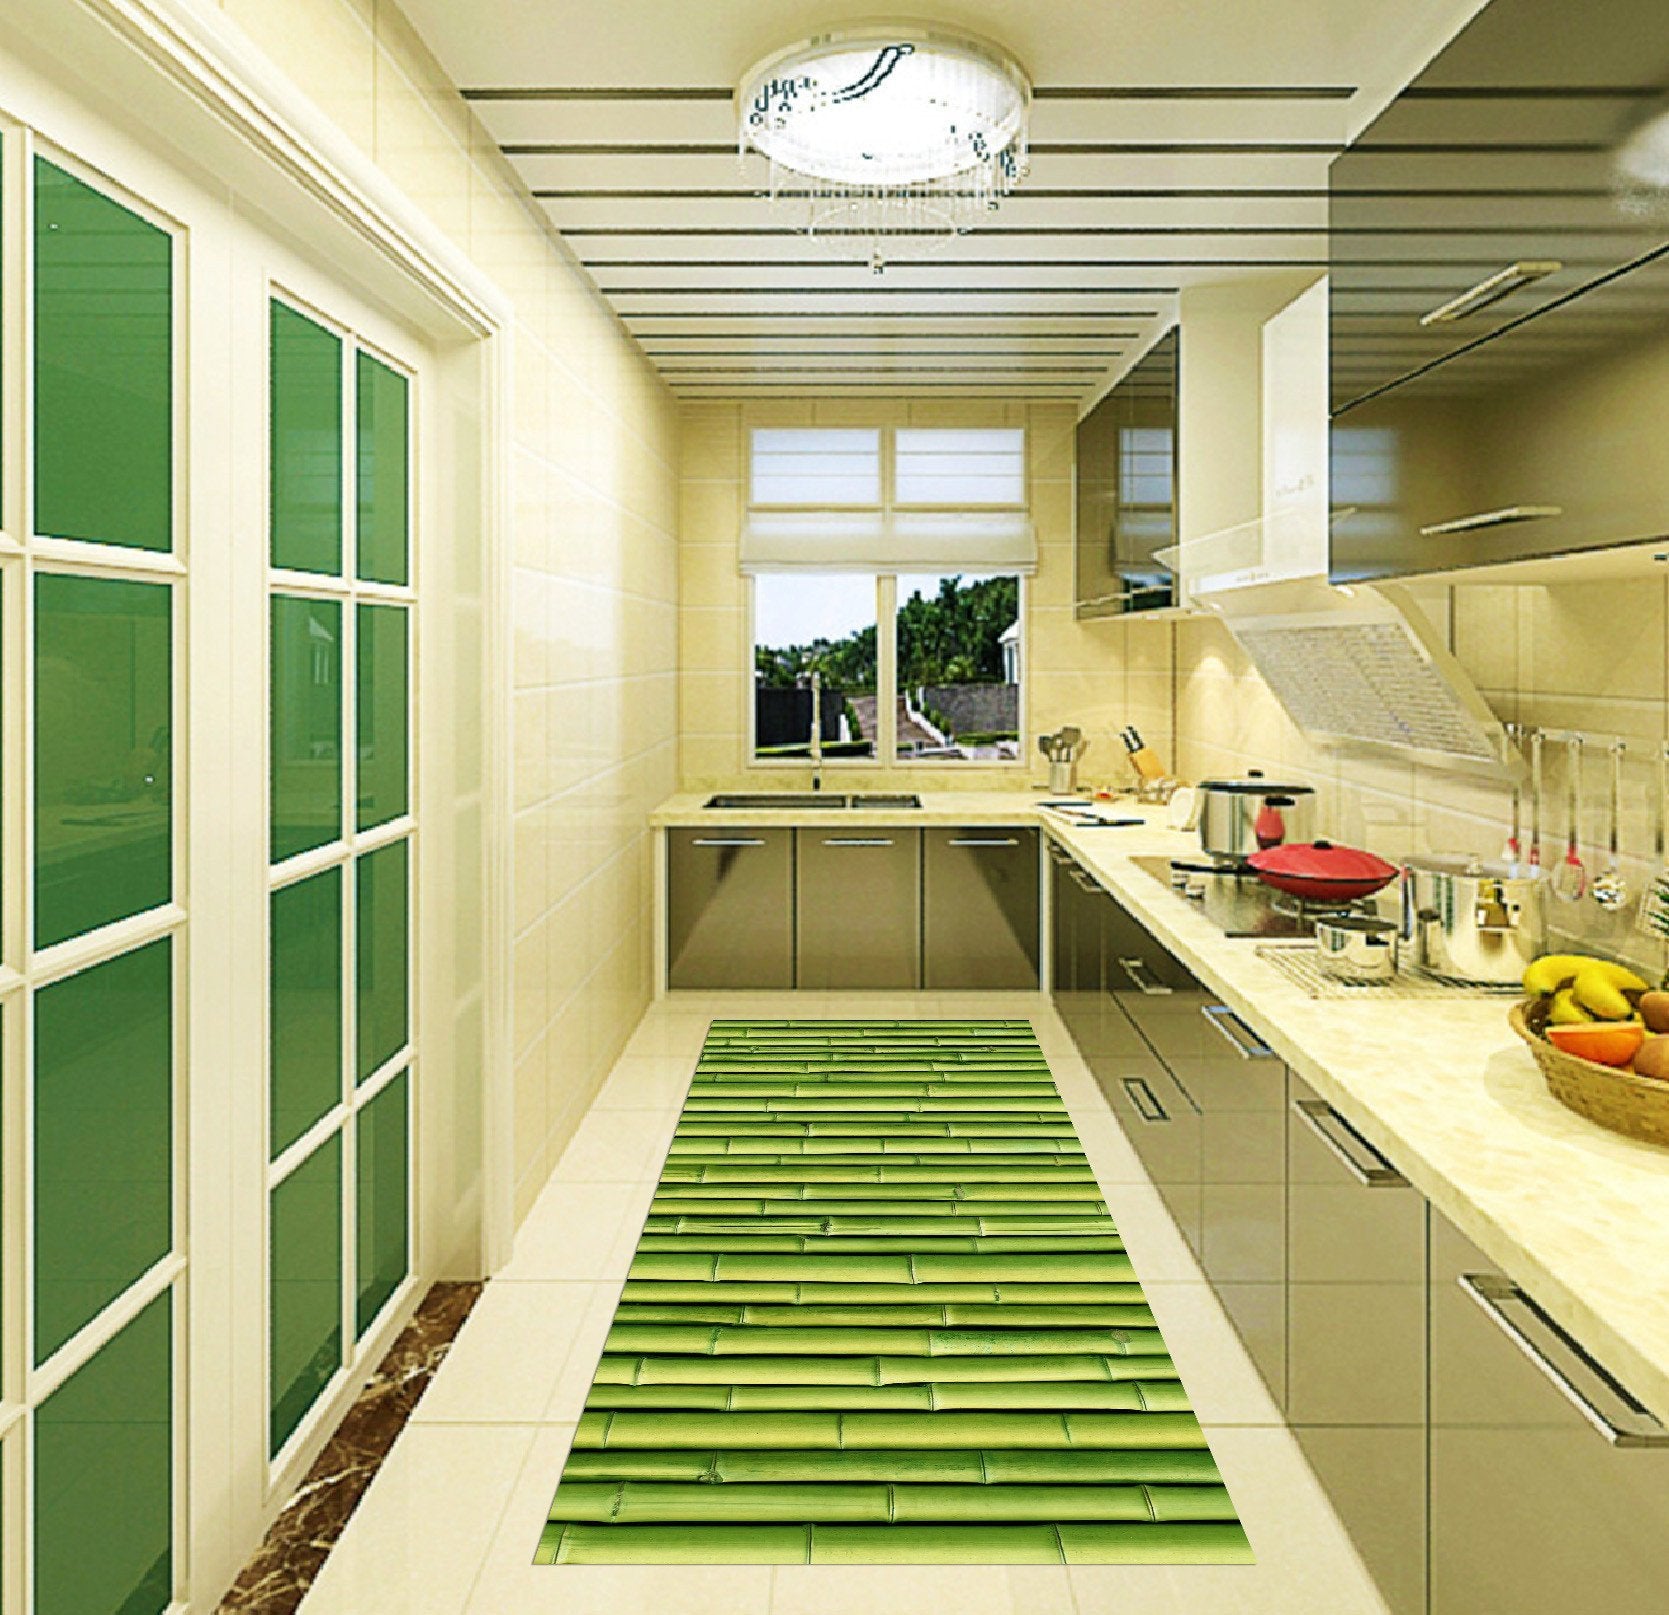 3D Bamboo Raft Kitchen Mat Floor Mural Wallpaper AJ Wallpaper 